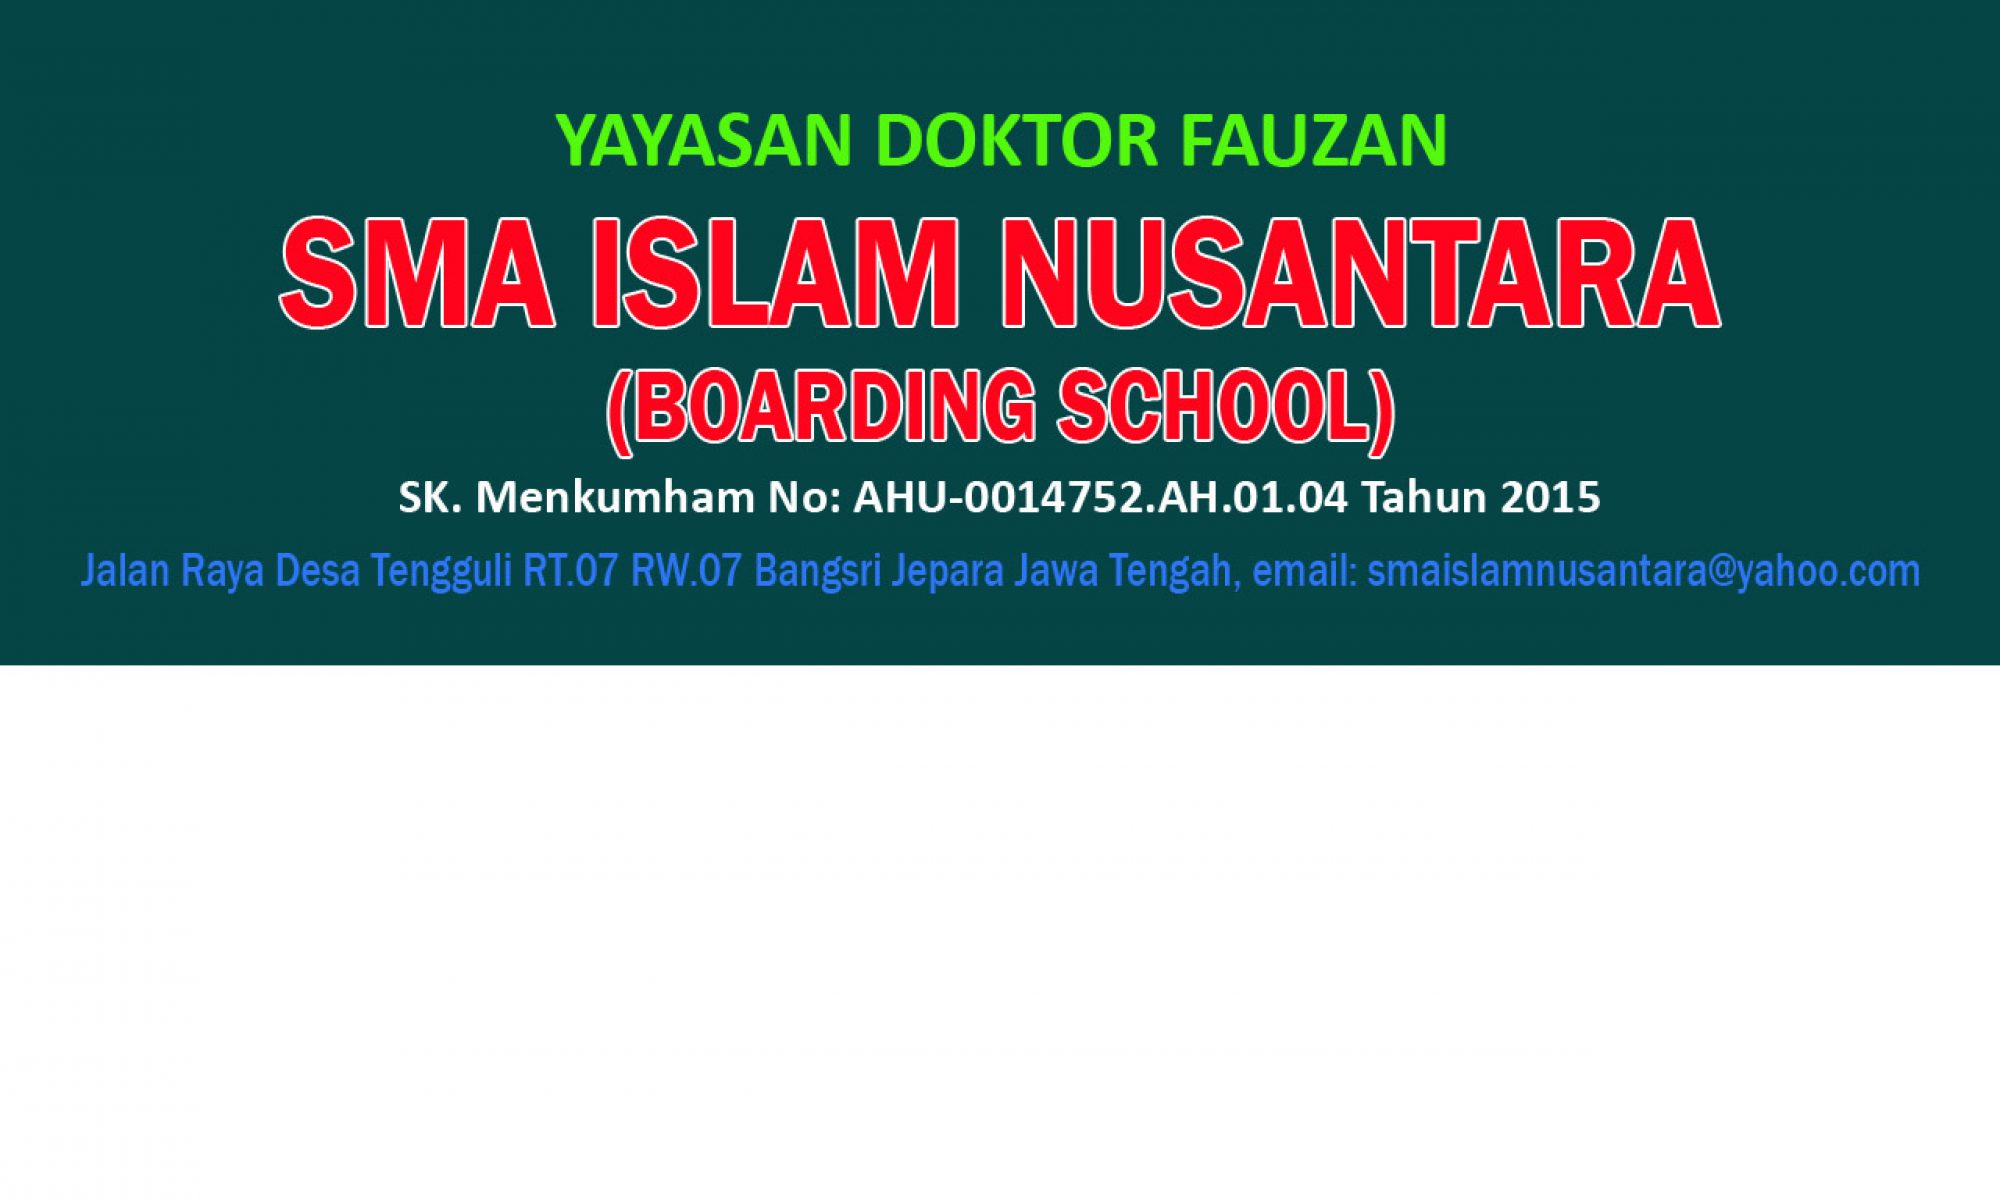 Pertatib Yayasan Sma Islam Nusantara Yayasan Doktor Fauzan